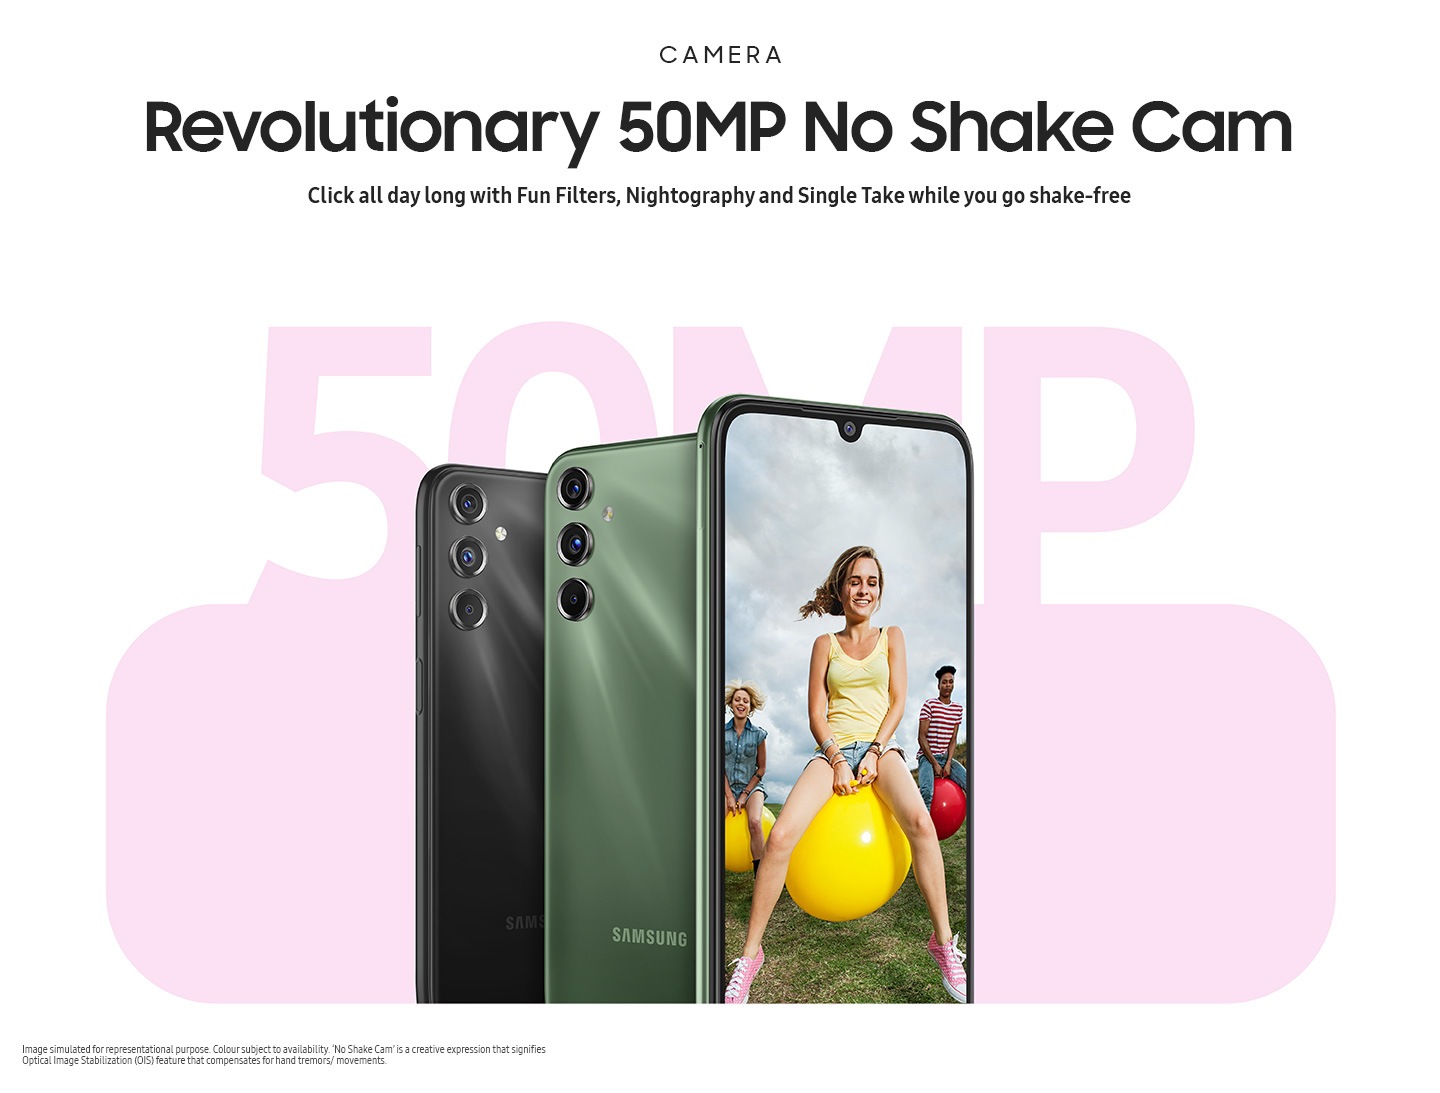 Revolutionary 50MP No Shake Cam